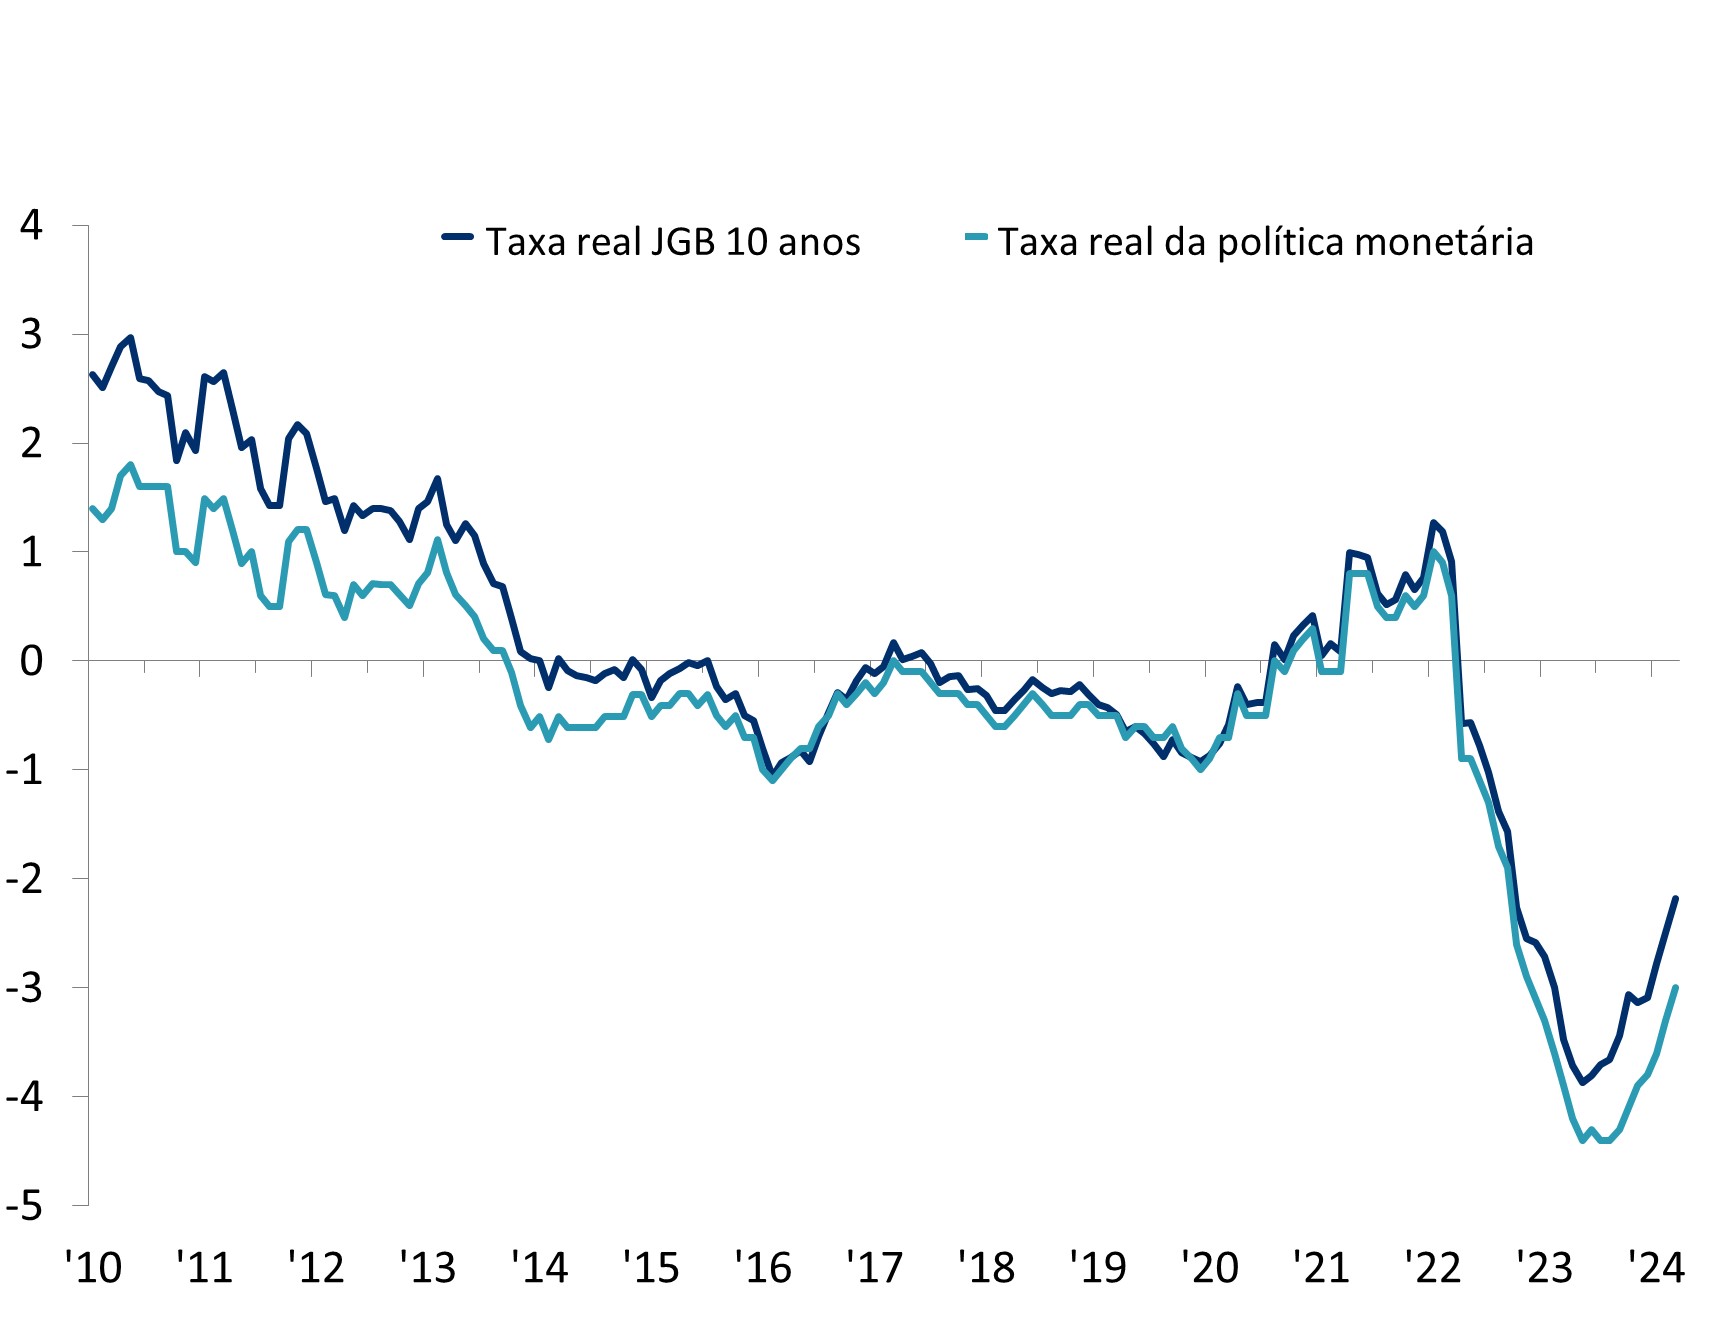 O gráfico de linhas ilustra as tendências tanto na taxa real de juros dos títulos do governo japonês de 10 anos (JGB) quanto na taxa real de política monetária de janeiro de 2010 a março de 2024. Em janeiro de 2010, a taxa real de juros dos títulos do governo japonês de 10 anos estava em 2,6% e a taxa real de política monetária estava em 1,3%. Ambos os indicadores sofreram uma queda, passando de taxas relativamente altas em 2010 para território negativo em 2014. De 2014 a 2019, ambas as taxas permaneceram estáveis, variando dentro da faixa de -1% a 0%. No entanto, em 2020, houve um aumento significativo, e ambas as taxas se tornaram positivas, chegando perto de 1% até 2022. Esta queda foi seguida por um declínio acentuado, com ambas as taxas despencando de volta para níveis negativos, atingindo uma baixa de 23 anos, com a taxa real de política monetária em -4,4% e o rendimento real dos títulos do governo japonês de 10 anos em -3,9% até maio de 2023. Houve uma reviravolta depois, com ambos os rendimentos subindo novamente. Em março de 2024, o rendimento real dos títulos do governo japonês de 10 anos atingiu -2,1% e a taxa real de política monetária -3%. Vale ressaltar que, em comparação com outras grandes economias, as taxas reais do Japão continuam entre as mais baixas.